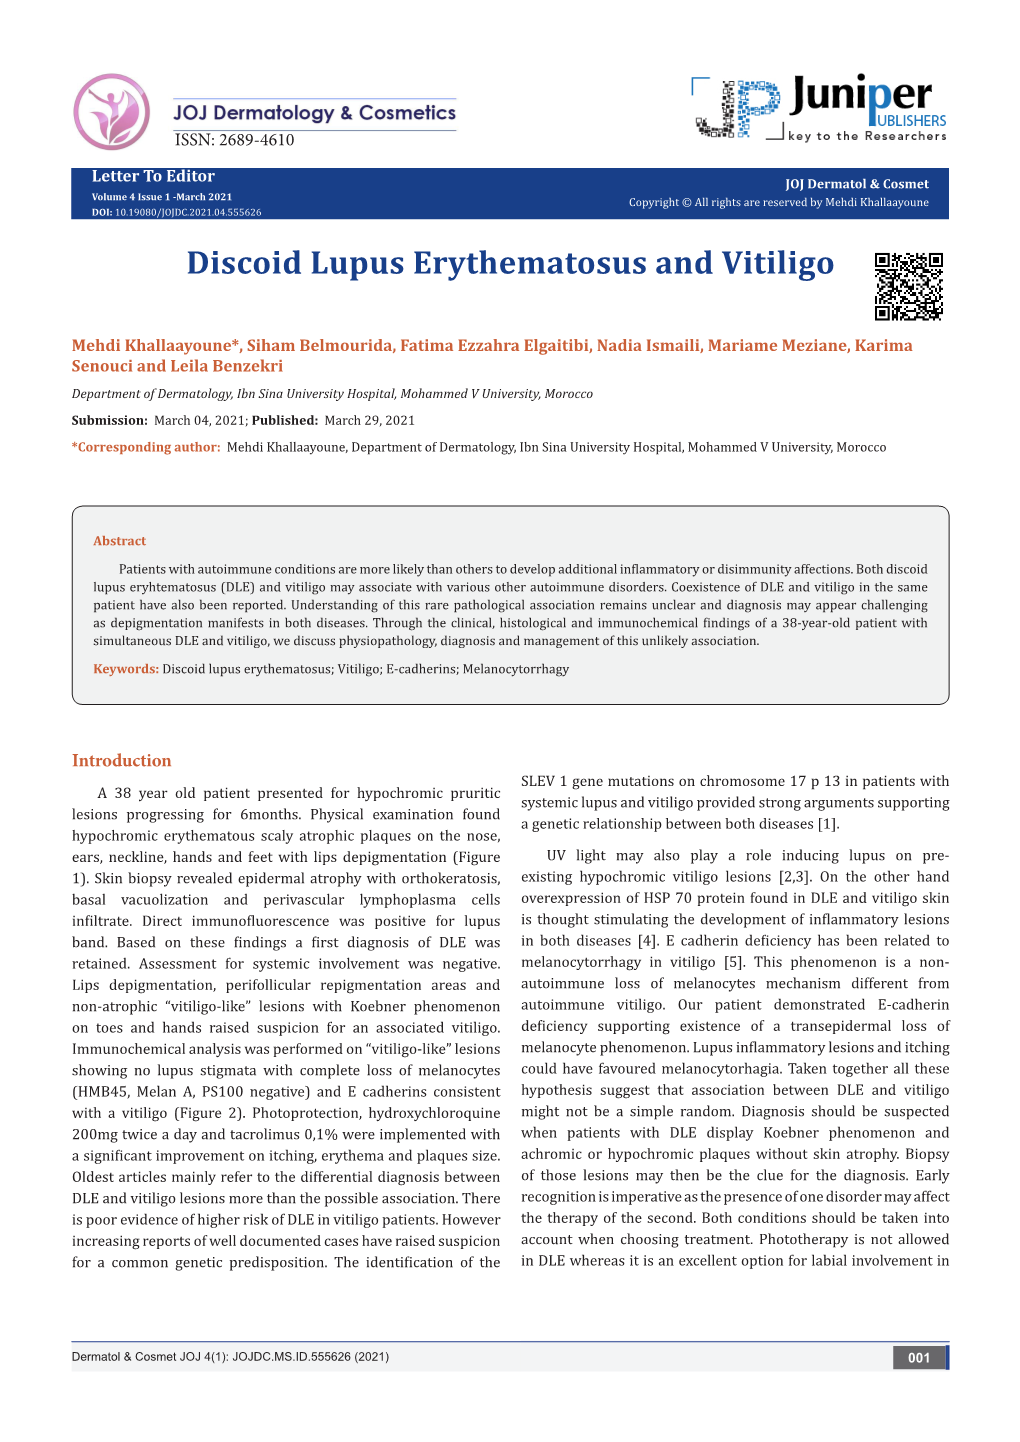 Discoid Lupus Erythematosus and Vitiligo